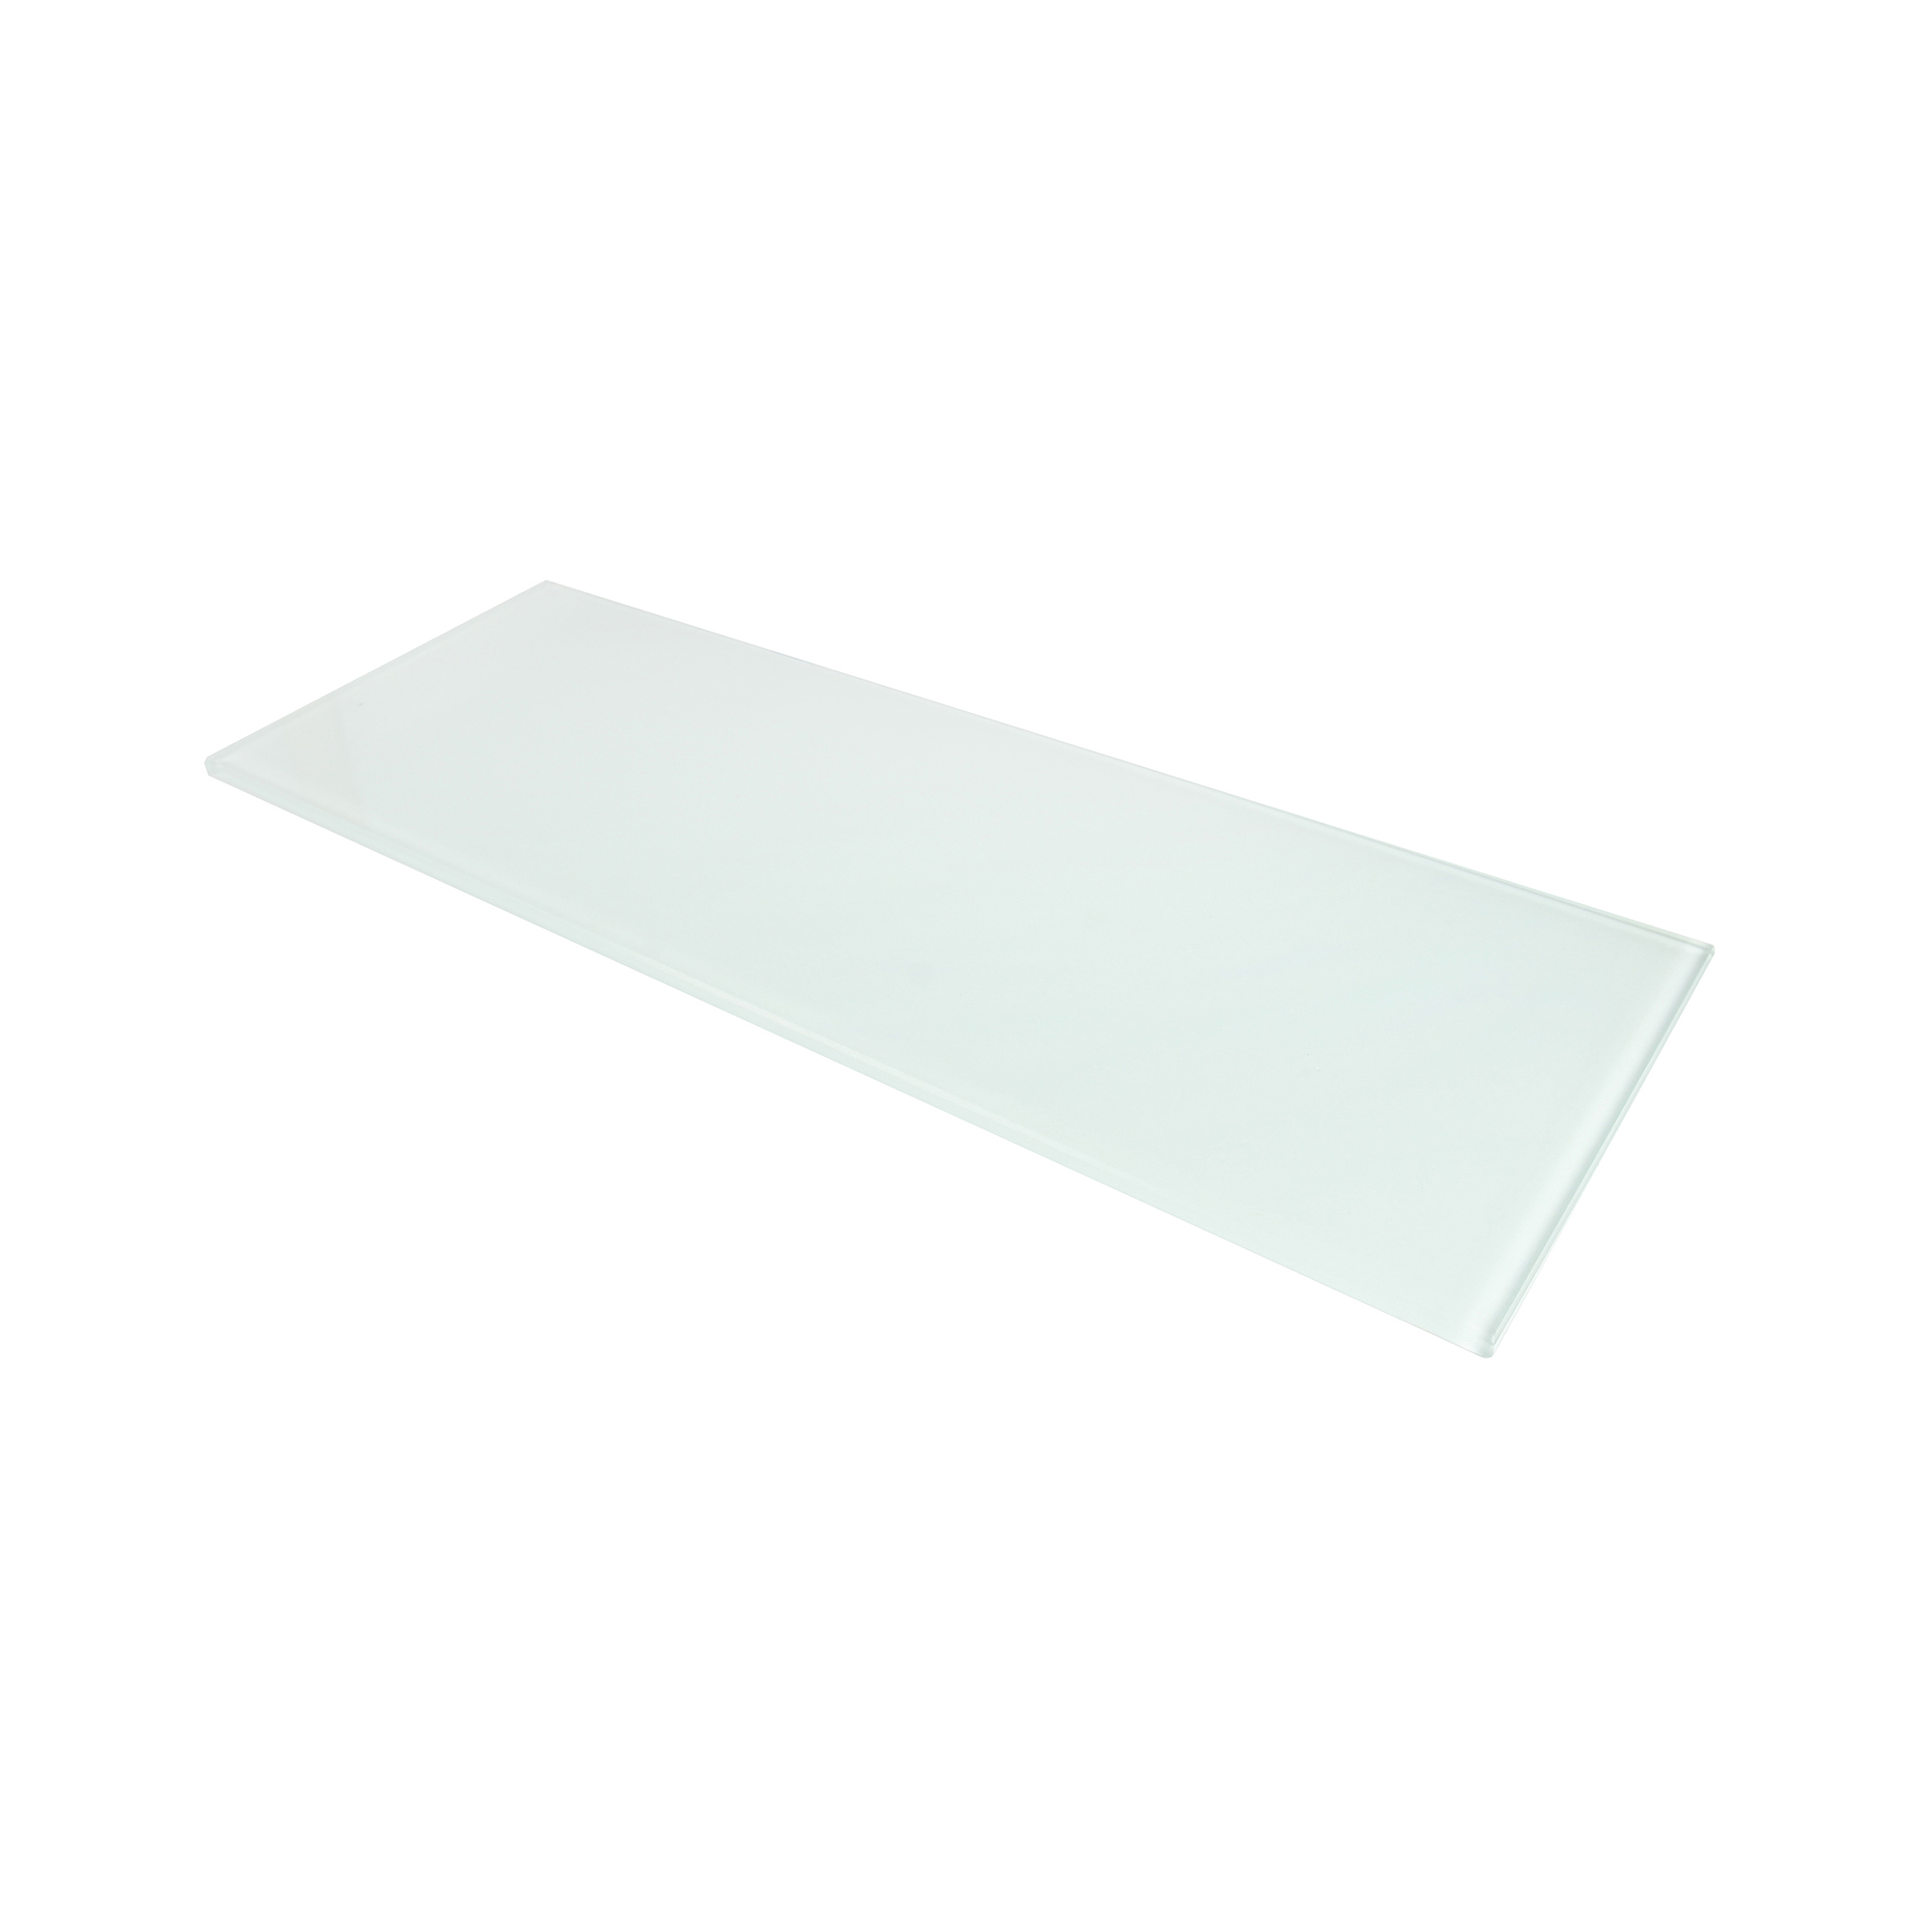 Estante de Cristal Rectangular Blanco | Medidas 400*6*150 mm | Espesor de la Balda: 6 mm | 1 Unidad